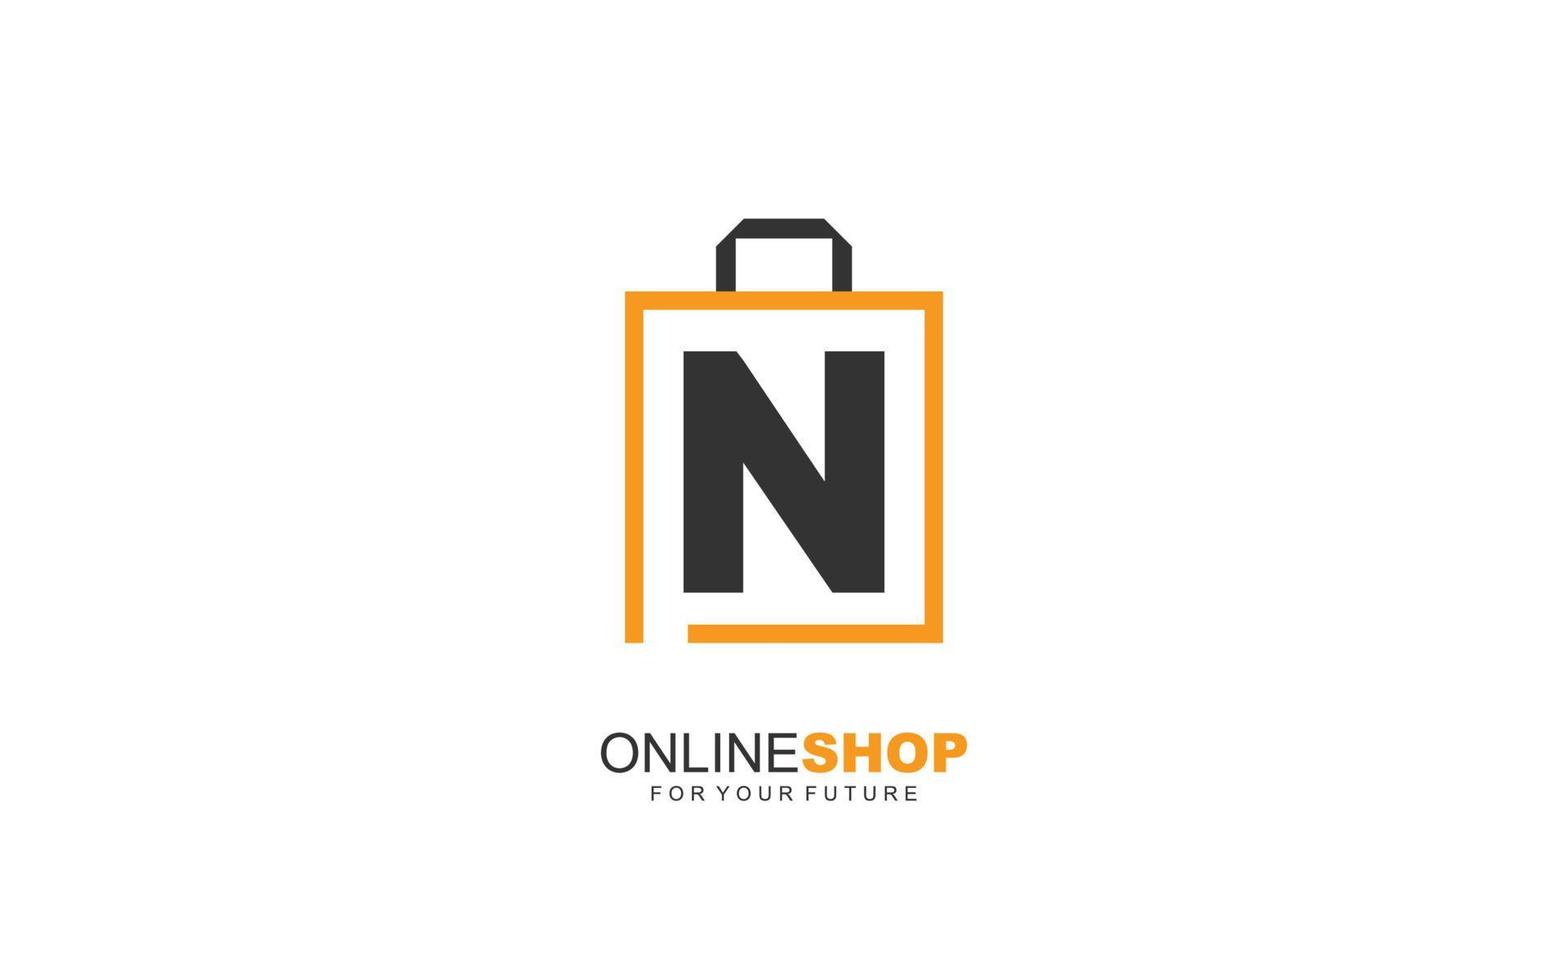 n Logo Onlineshop für Branding Company. Taschenschablonen-Vektorillustration für Ihre Marke. vektor